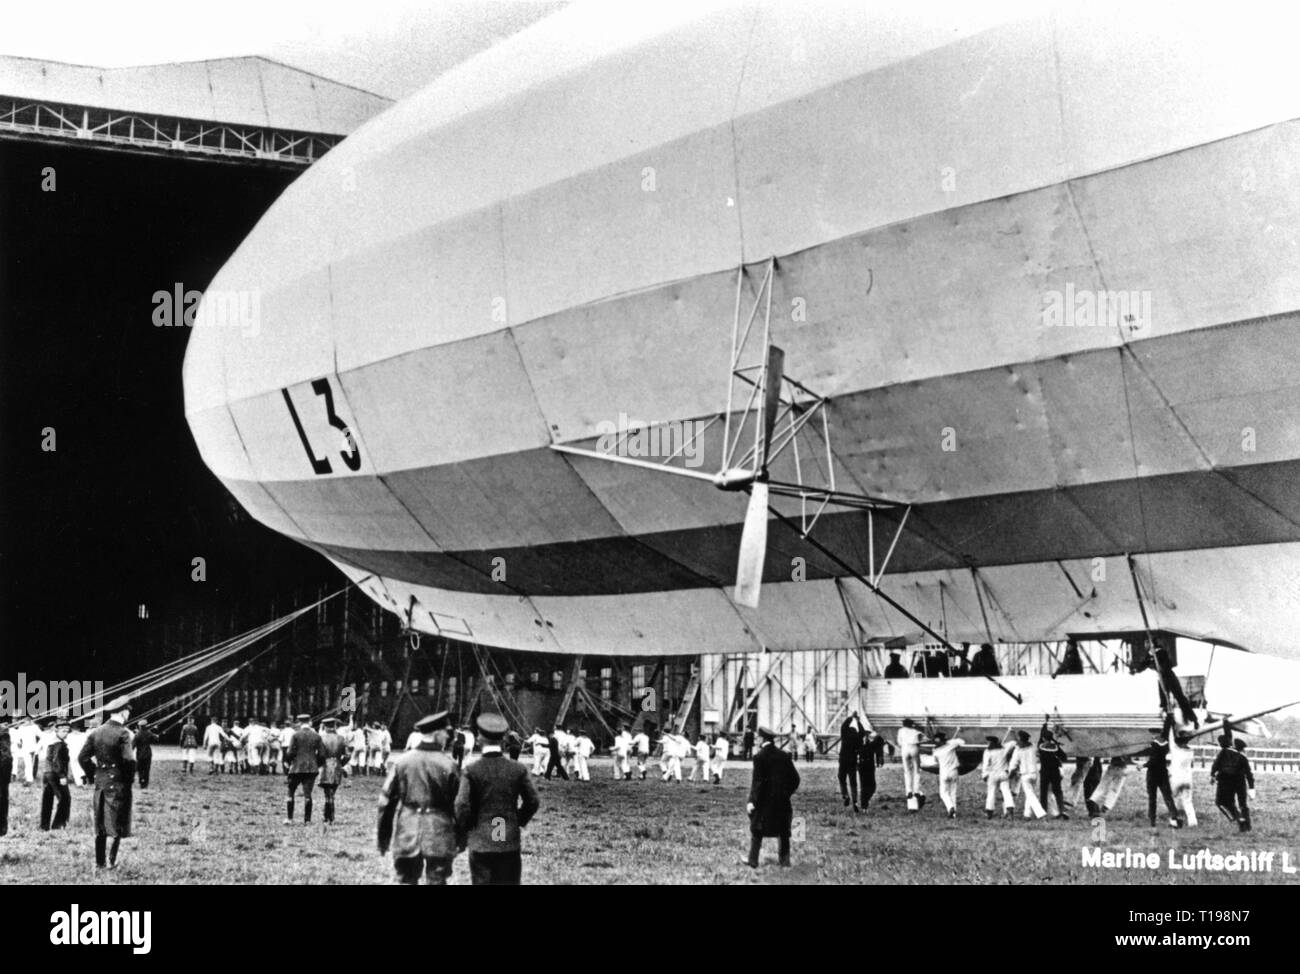 Verkehr/Transport, Luftfahrt, Luftschiff, naval Luftschiff L3 (Zeppelin LZ 24) der Kaiserlichen Marine, wird mitgeführt in den Hangar, Deutschland, 1914, Additional-Rights - Clearance-Info - Not-Available Stockfoto